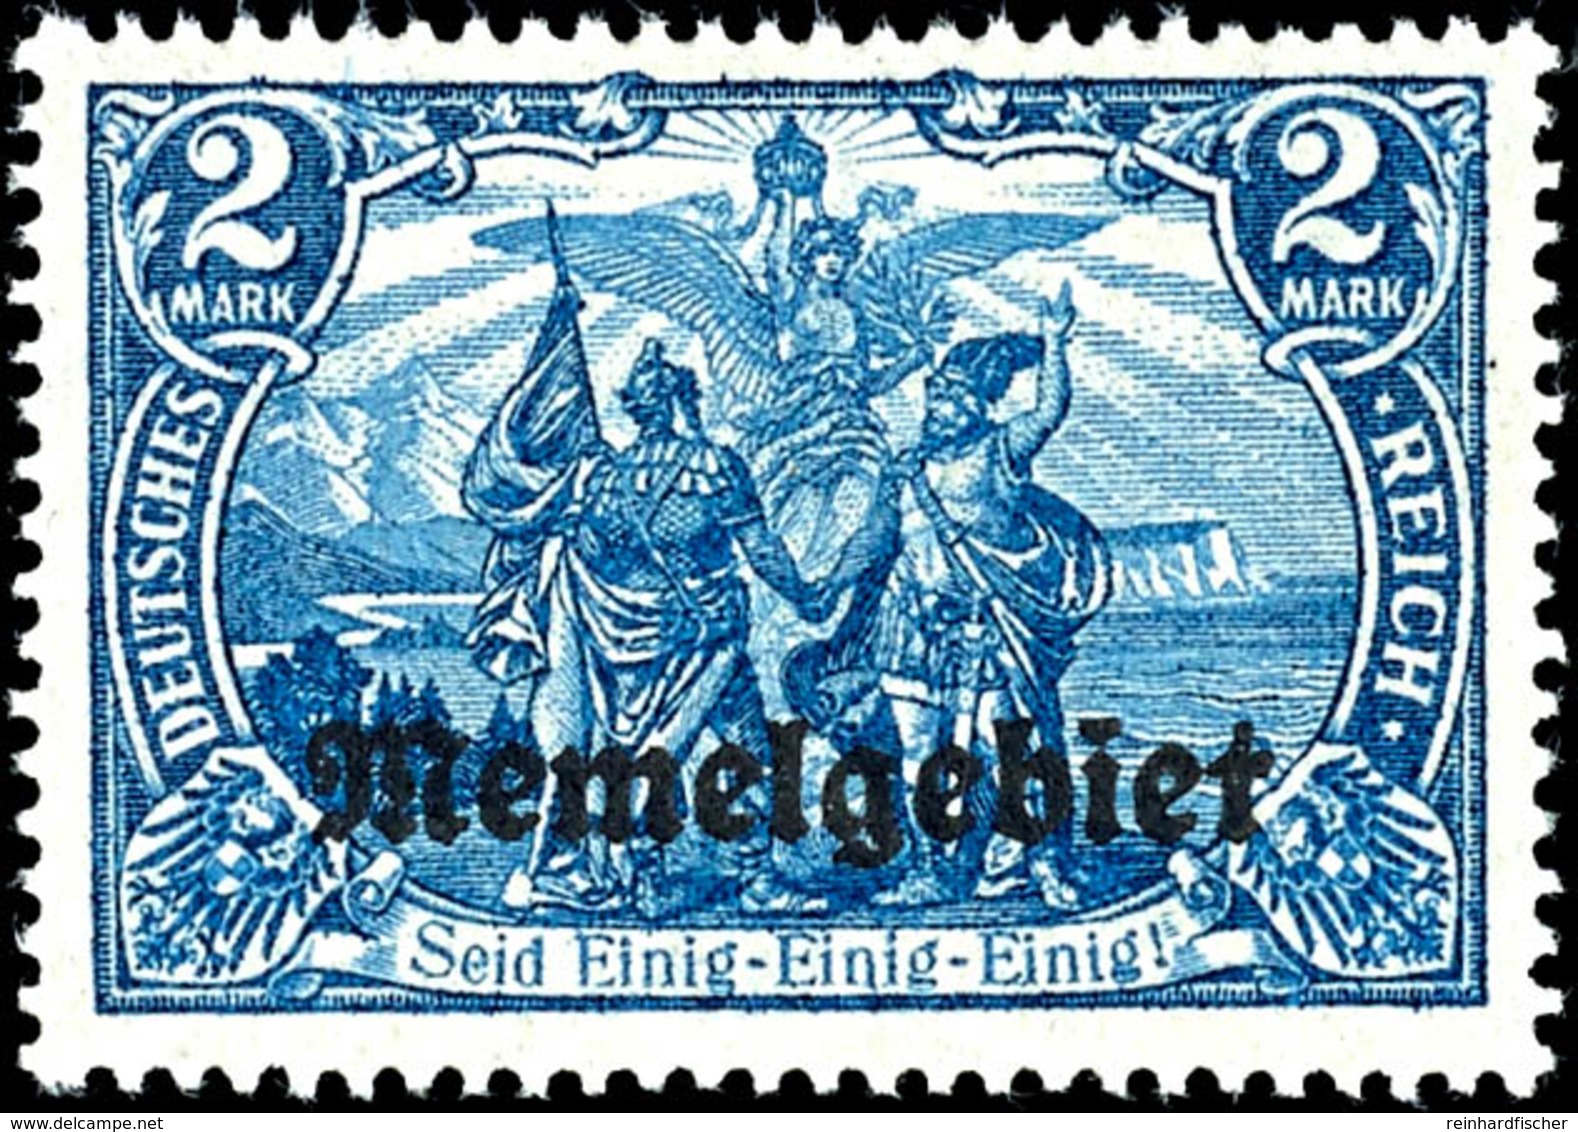 5 - 80 Pfg Germania Mit Aufdruck, 17 Werte Komplett, Tadellos Postfrisch, Gepr. Dr. Petersen BPP, Mi. 300.-, Katalog: 1/ - Memelgebiet 1923